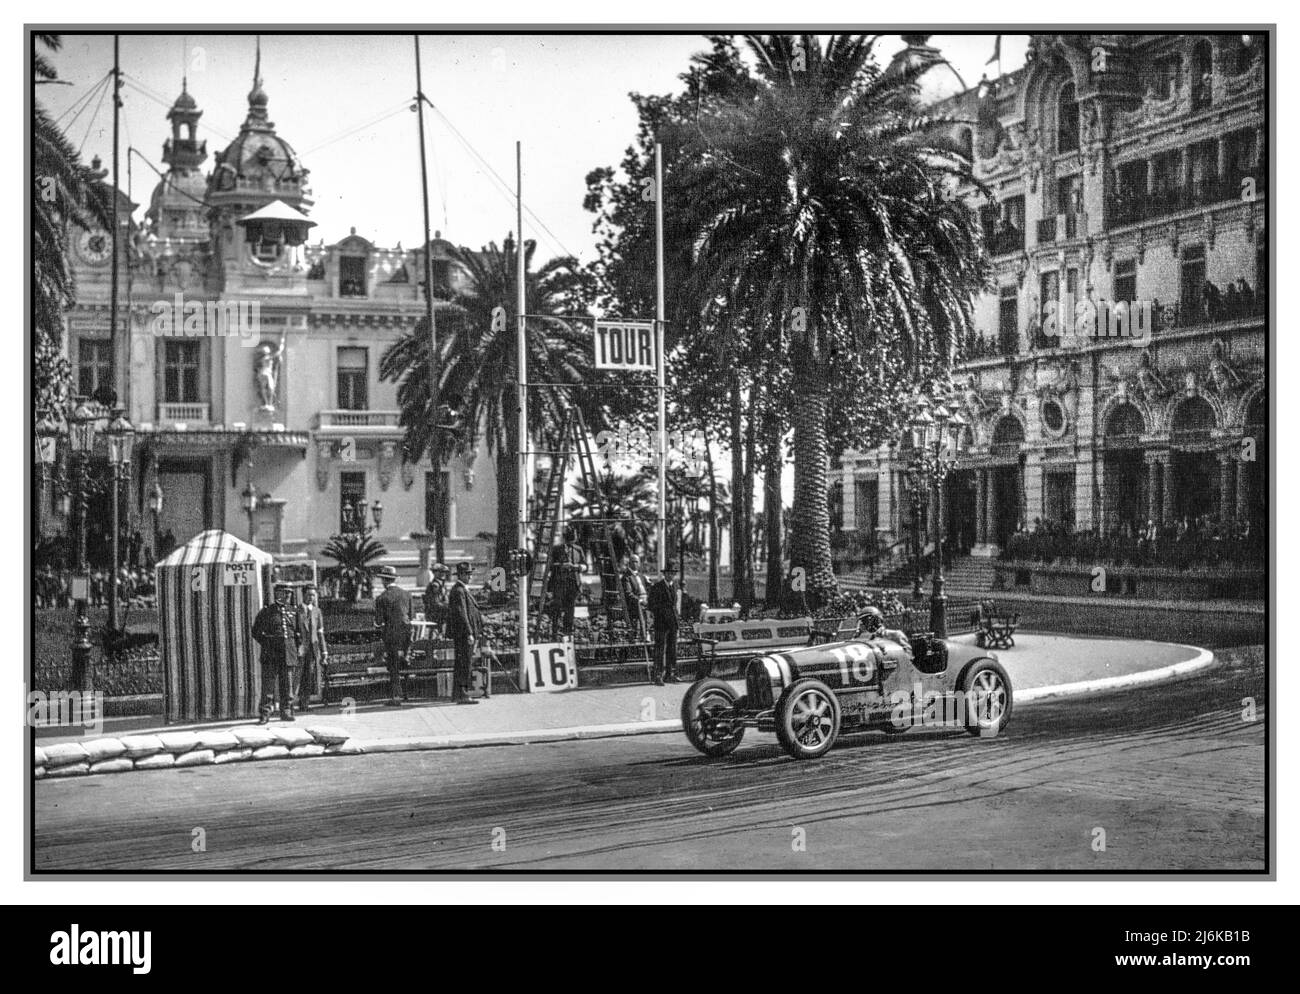 Der große Preis von Monaco 1930 mit Louis Chiron (zweiter Platz) in einem Werk von einem Bügli. Ein Grand-Prix-Motorrennen, das am 6. April 1930 auf dem Circuit de Monaco ausgetragen wird. Der Franzose René Dreyfus gewann das Rennen in einem Privatfahrer, vor dem Werk von Louis 35 Chiron, der hier die Nummer 18 sah, die mit dem Casino de Monaco dahinter den zweiten Platz belegte. Monaco Monte Carlo Riviera Stockfoto